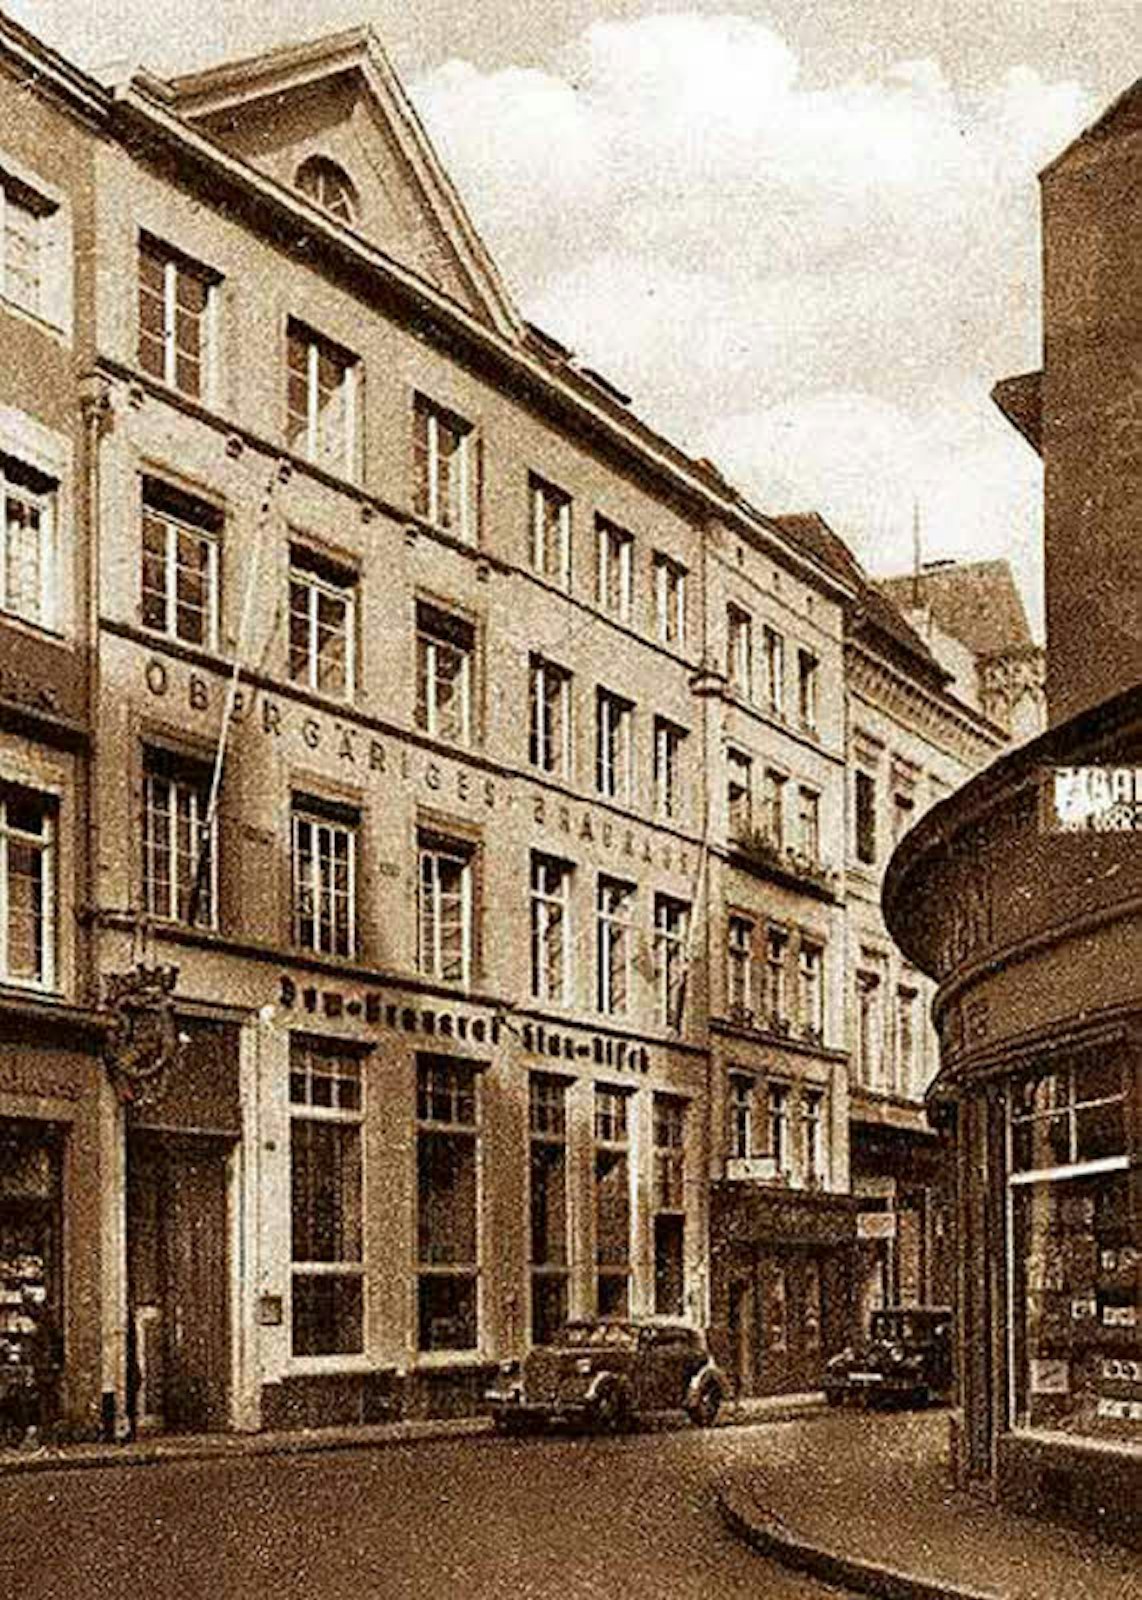 Bis zum Ende der 1930er Jahre prangte der Schriftzug „Dom-Brauerei“ an der Fassade, ehe dieser Name dort gerichtlich verboten wurde.